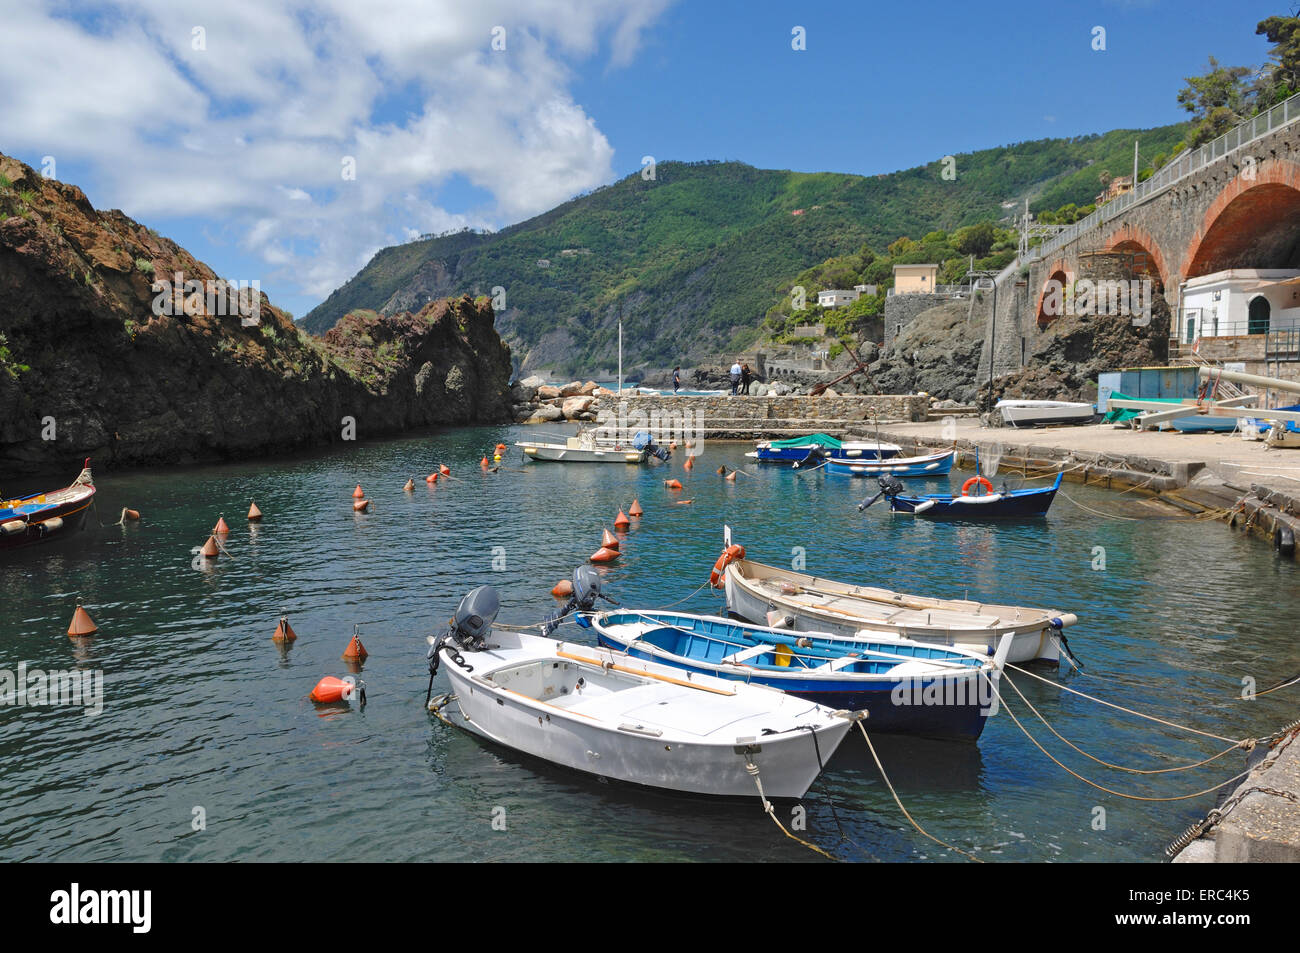 a view on Marina of Framura, riviera di levante, Liguria Stock Photo